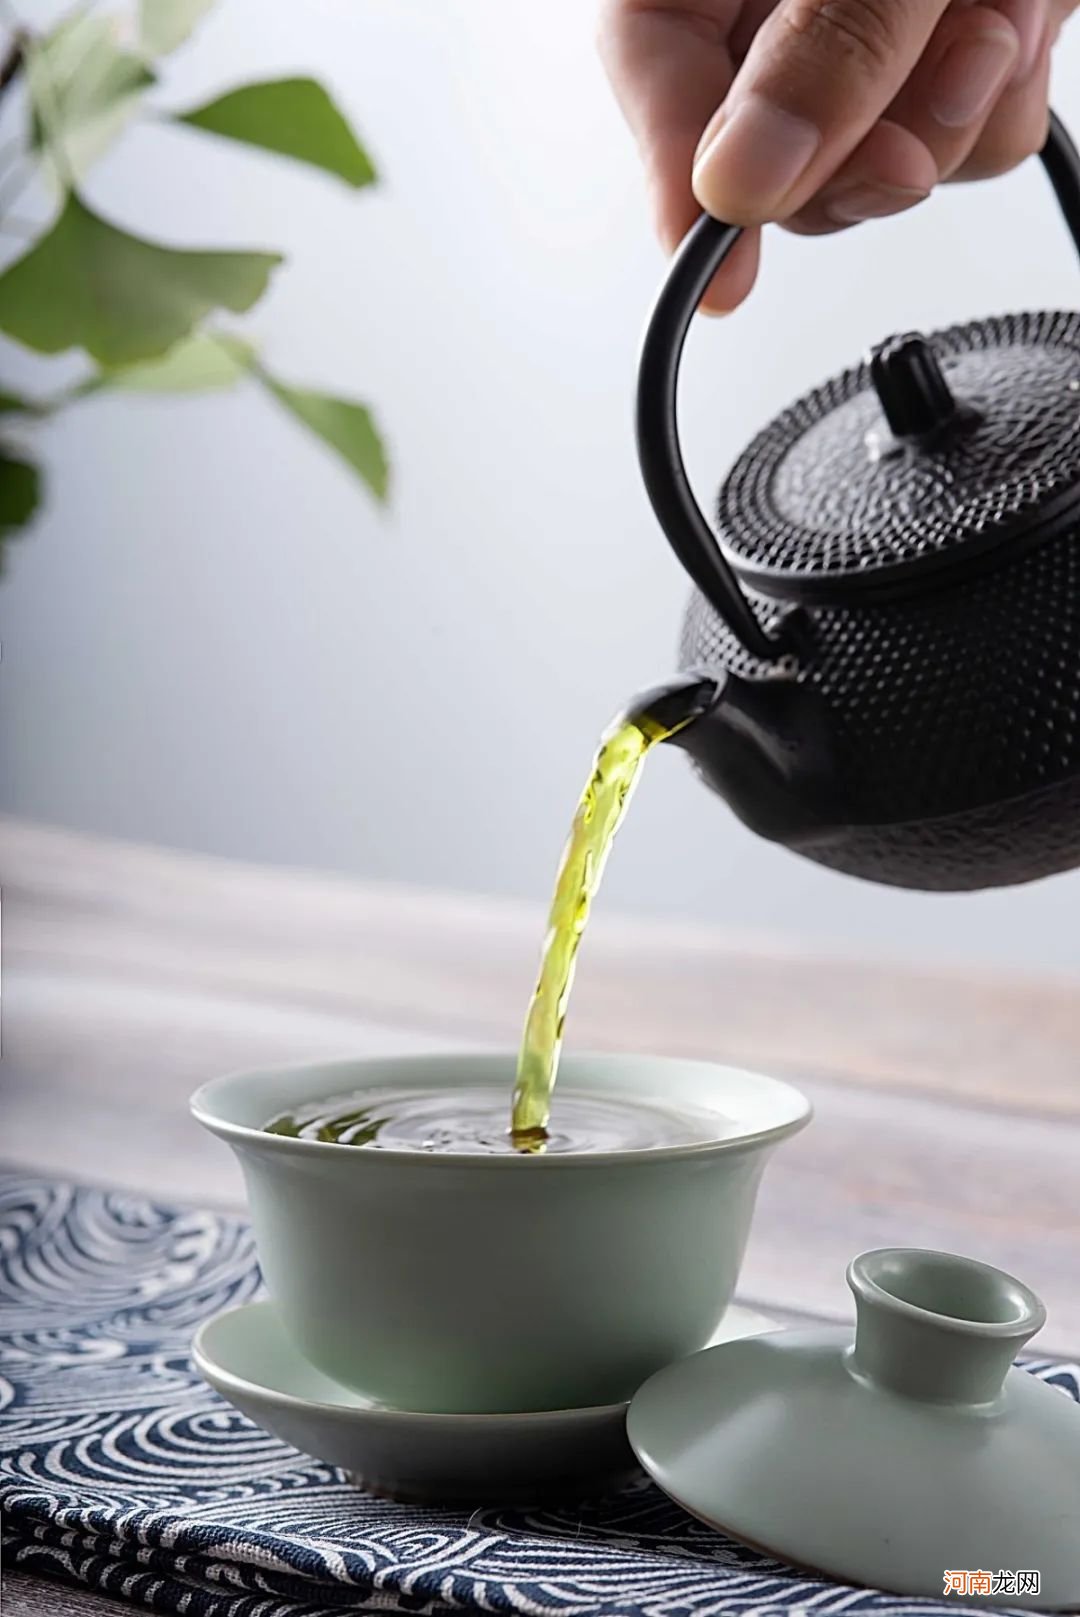 糯香普洱茶为什么会有糯米香 糯米普洱茶的制作方法